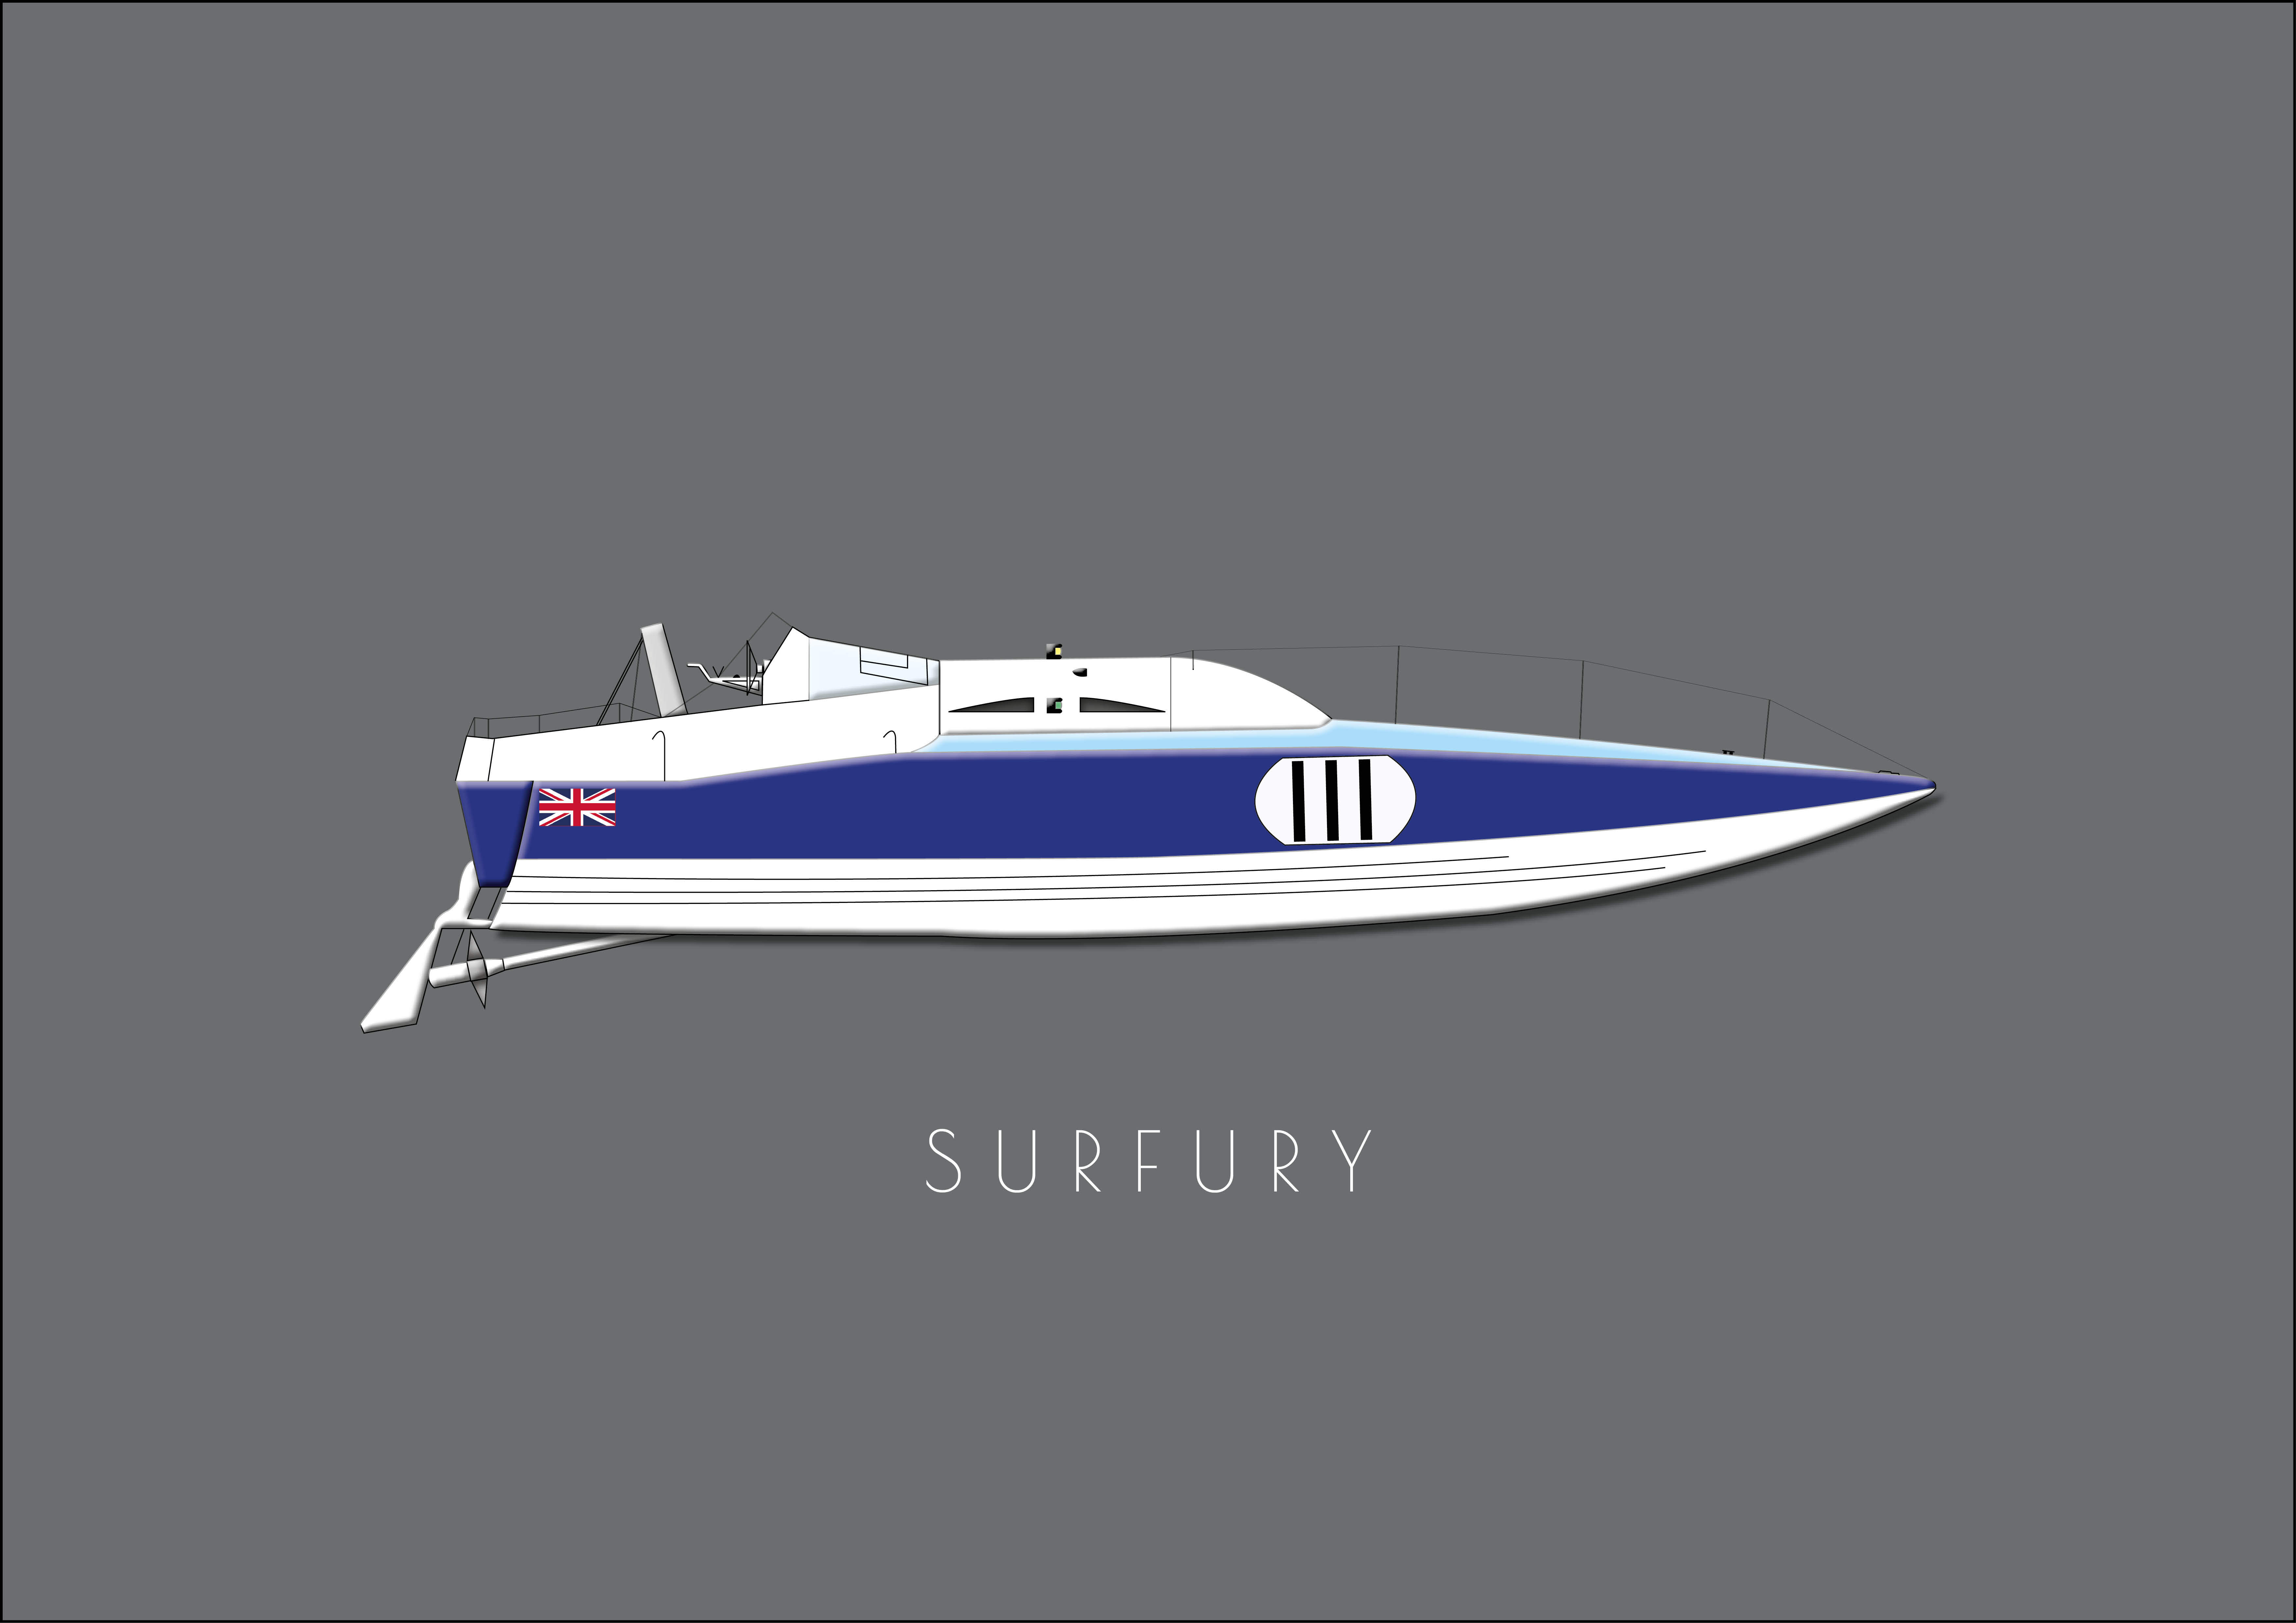 Powerboat "Surfury" - Single postcard